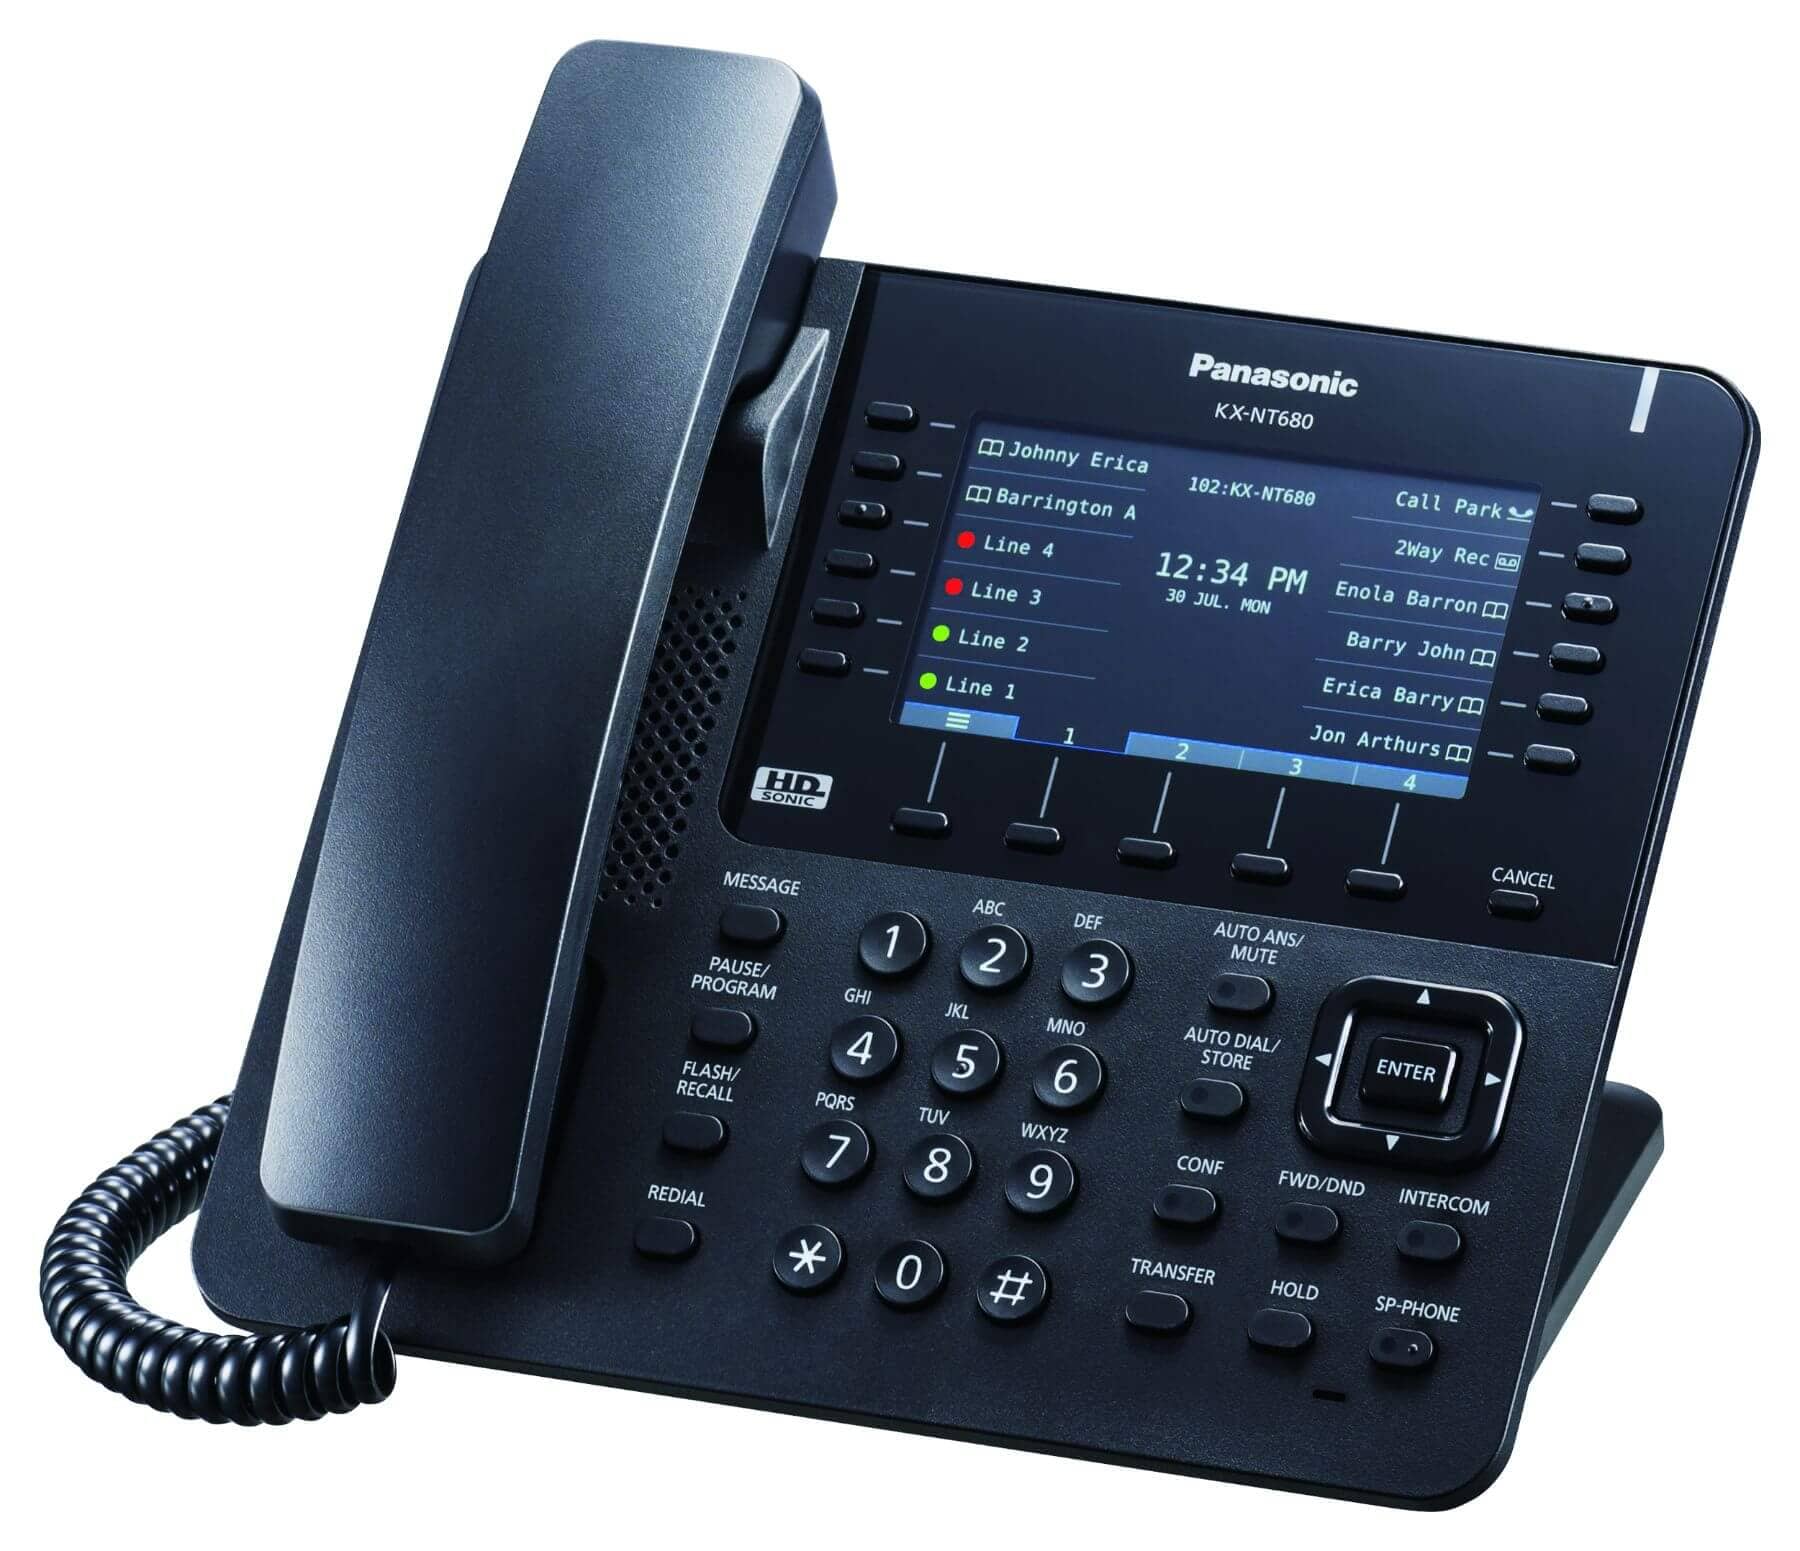 Panasonic KX-NT680 IP Phone Image